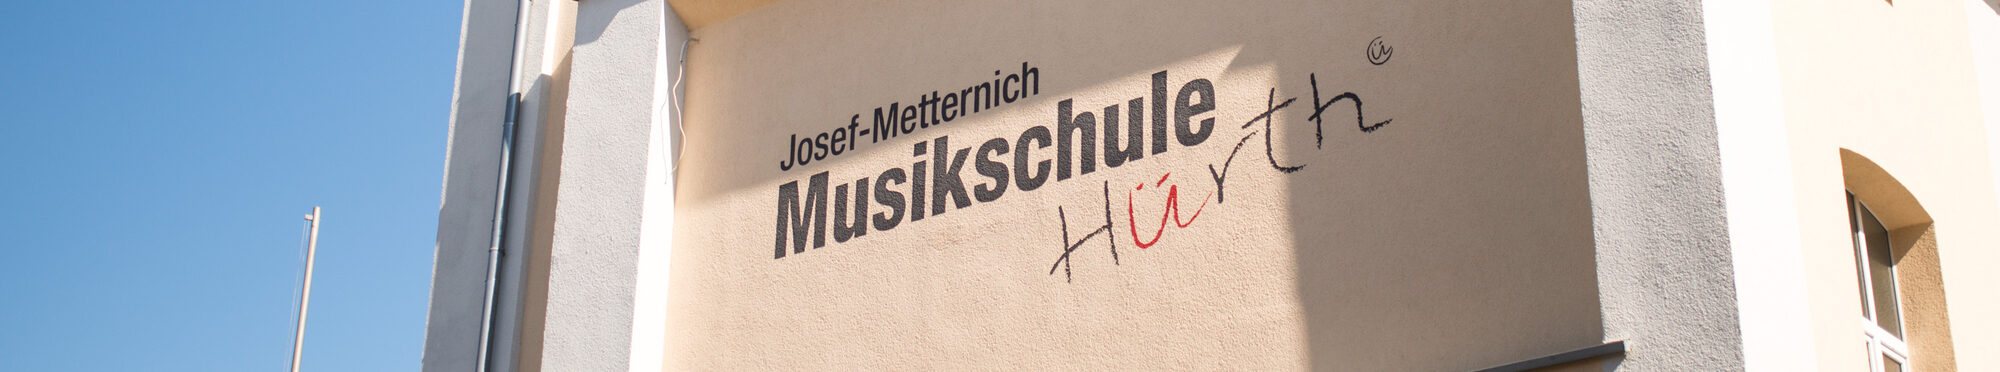 Josef Metternich-Musikschule